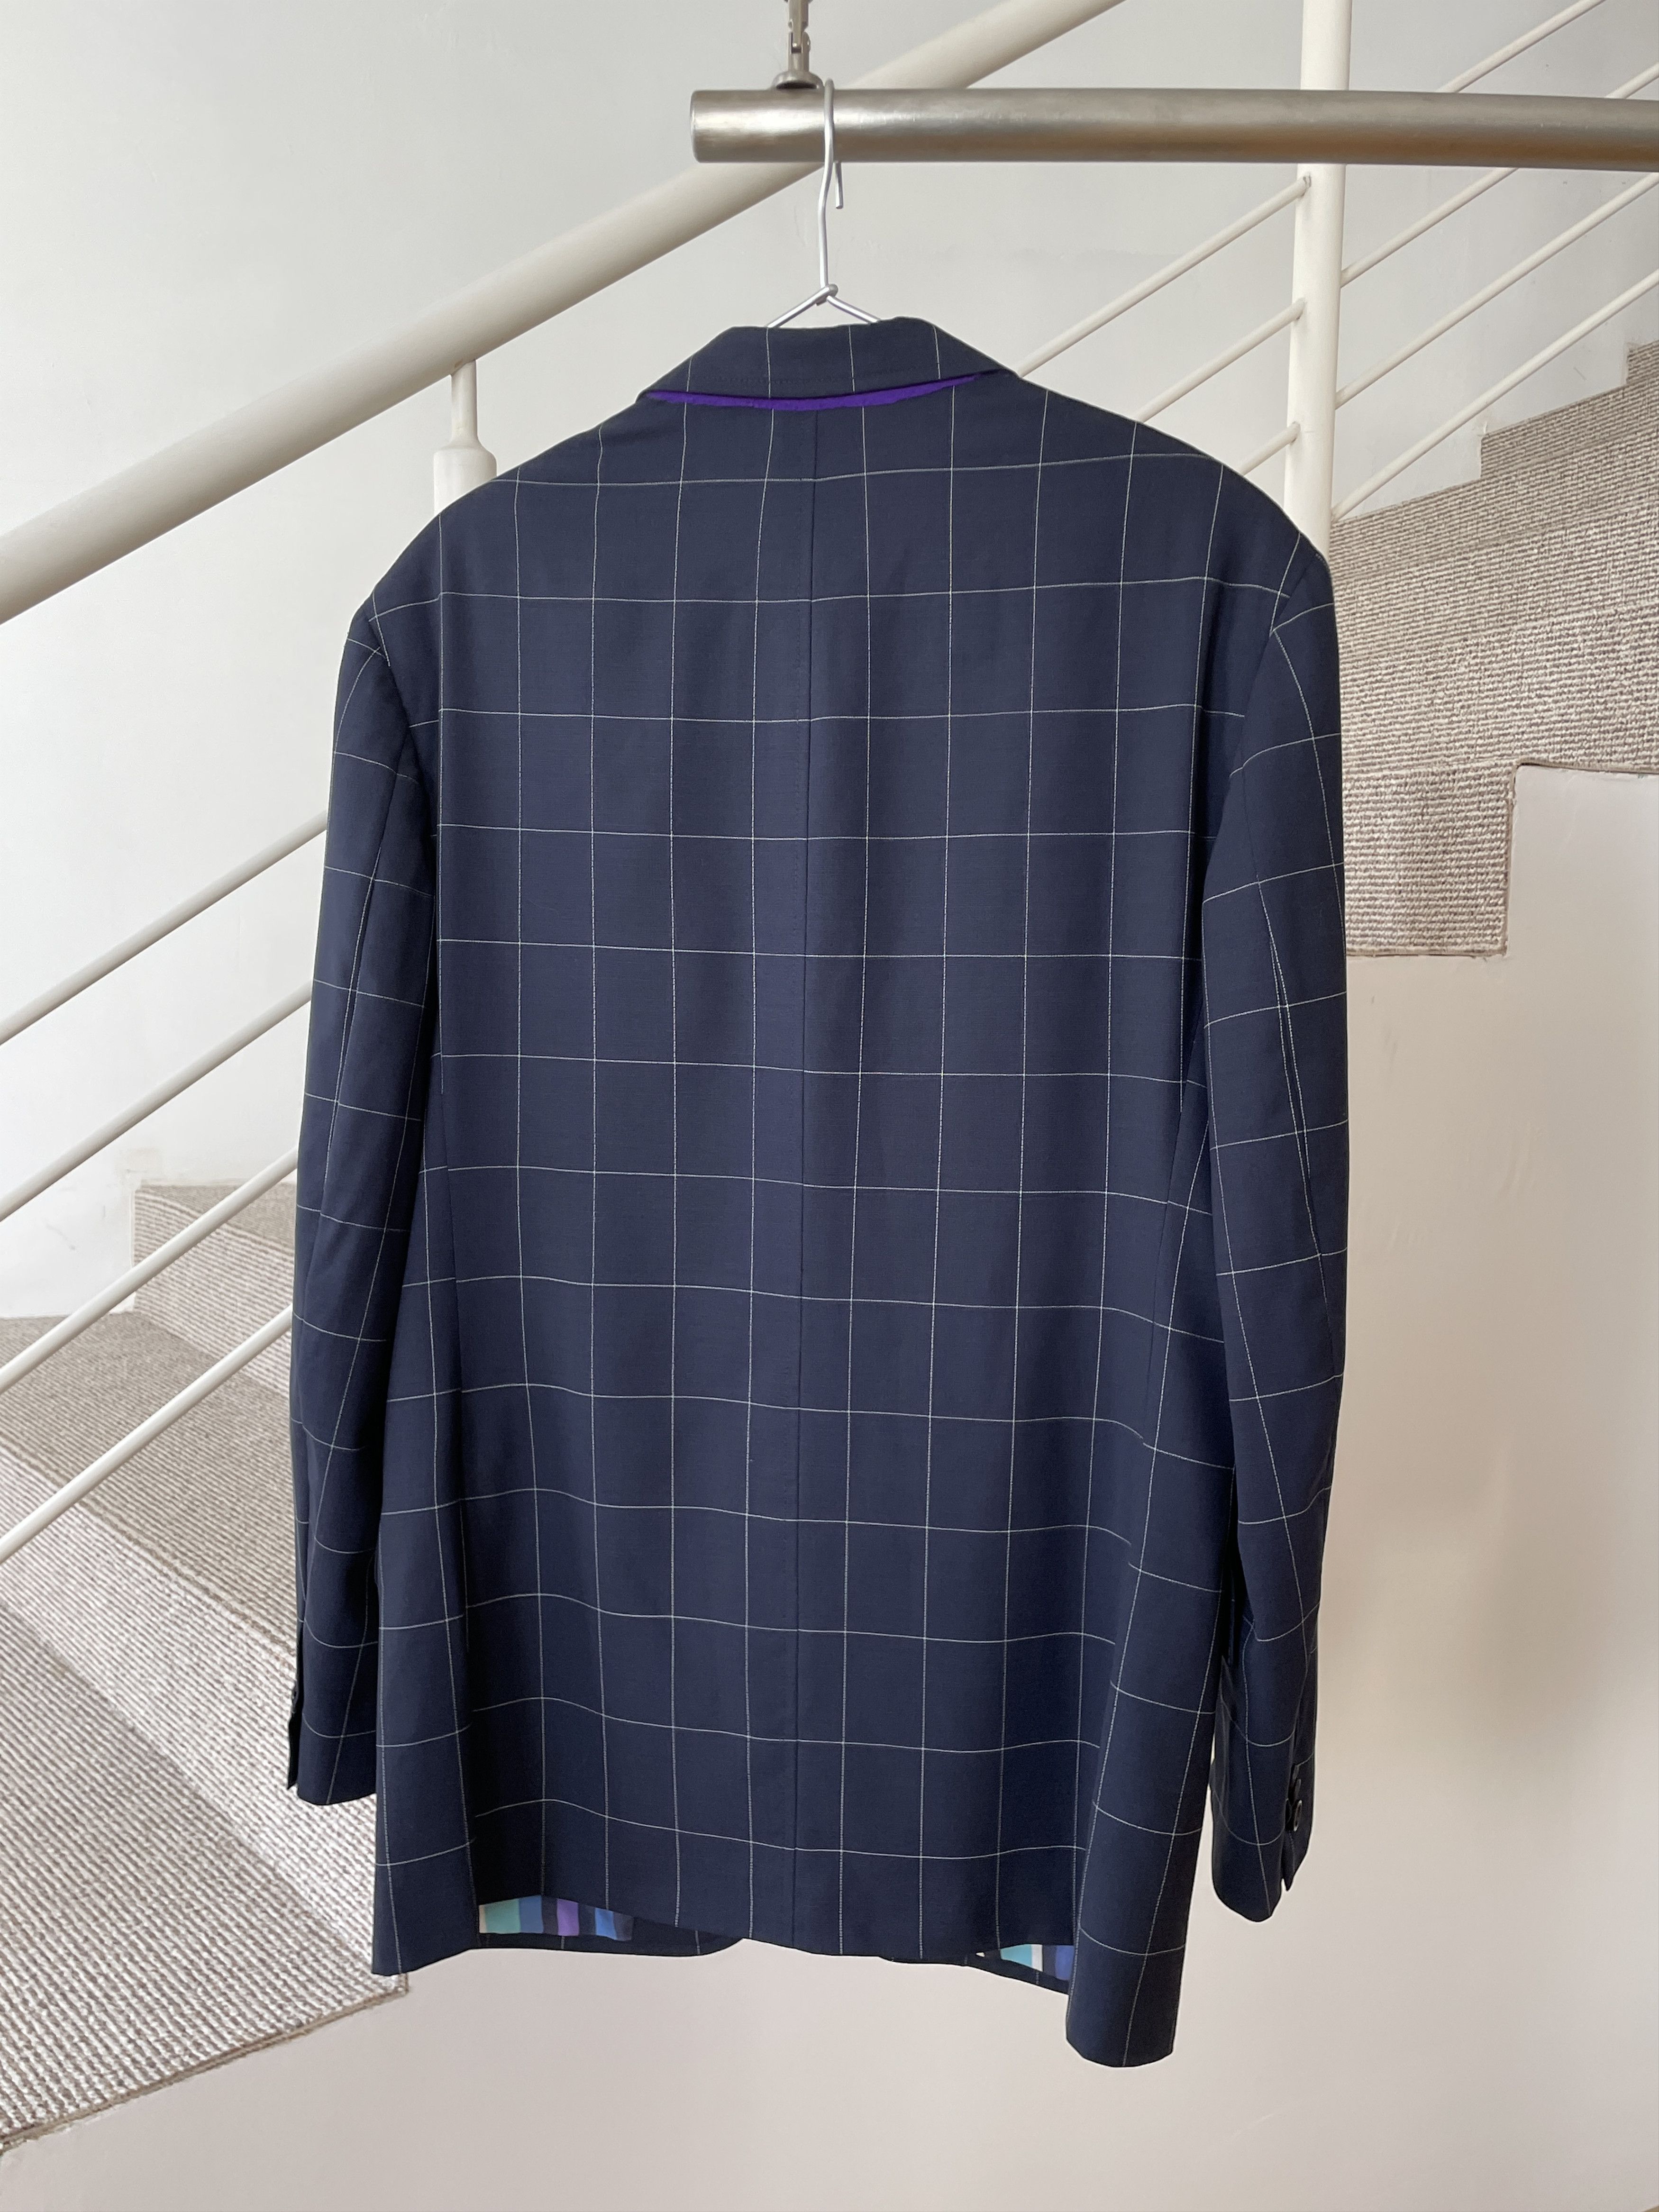 Etro ETRO Jacket Coat Blazer Trousers Suit Plaid Wool A7923 Size 40R - 5 Thumbnail